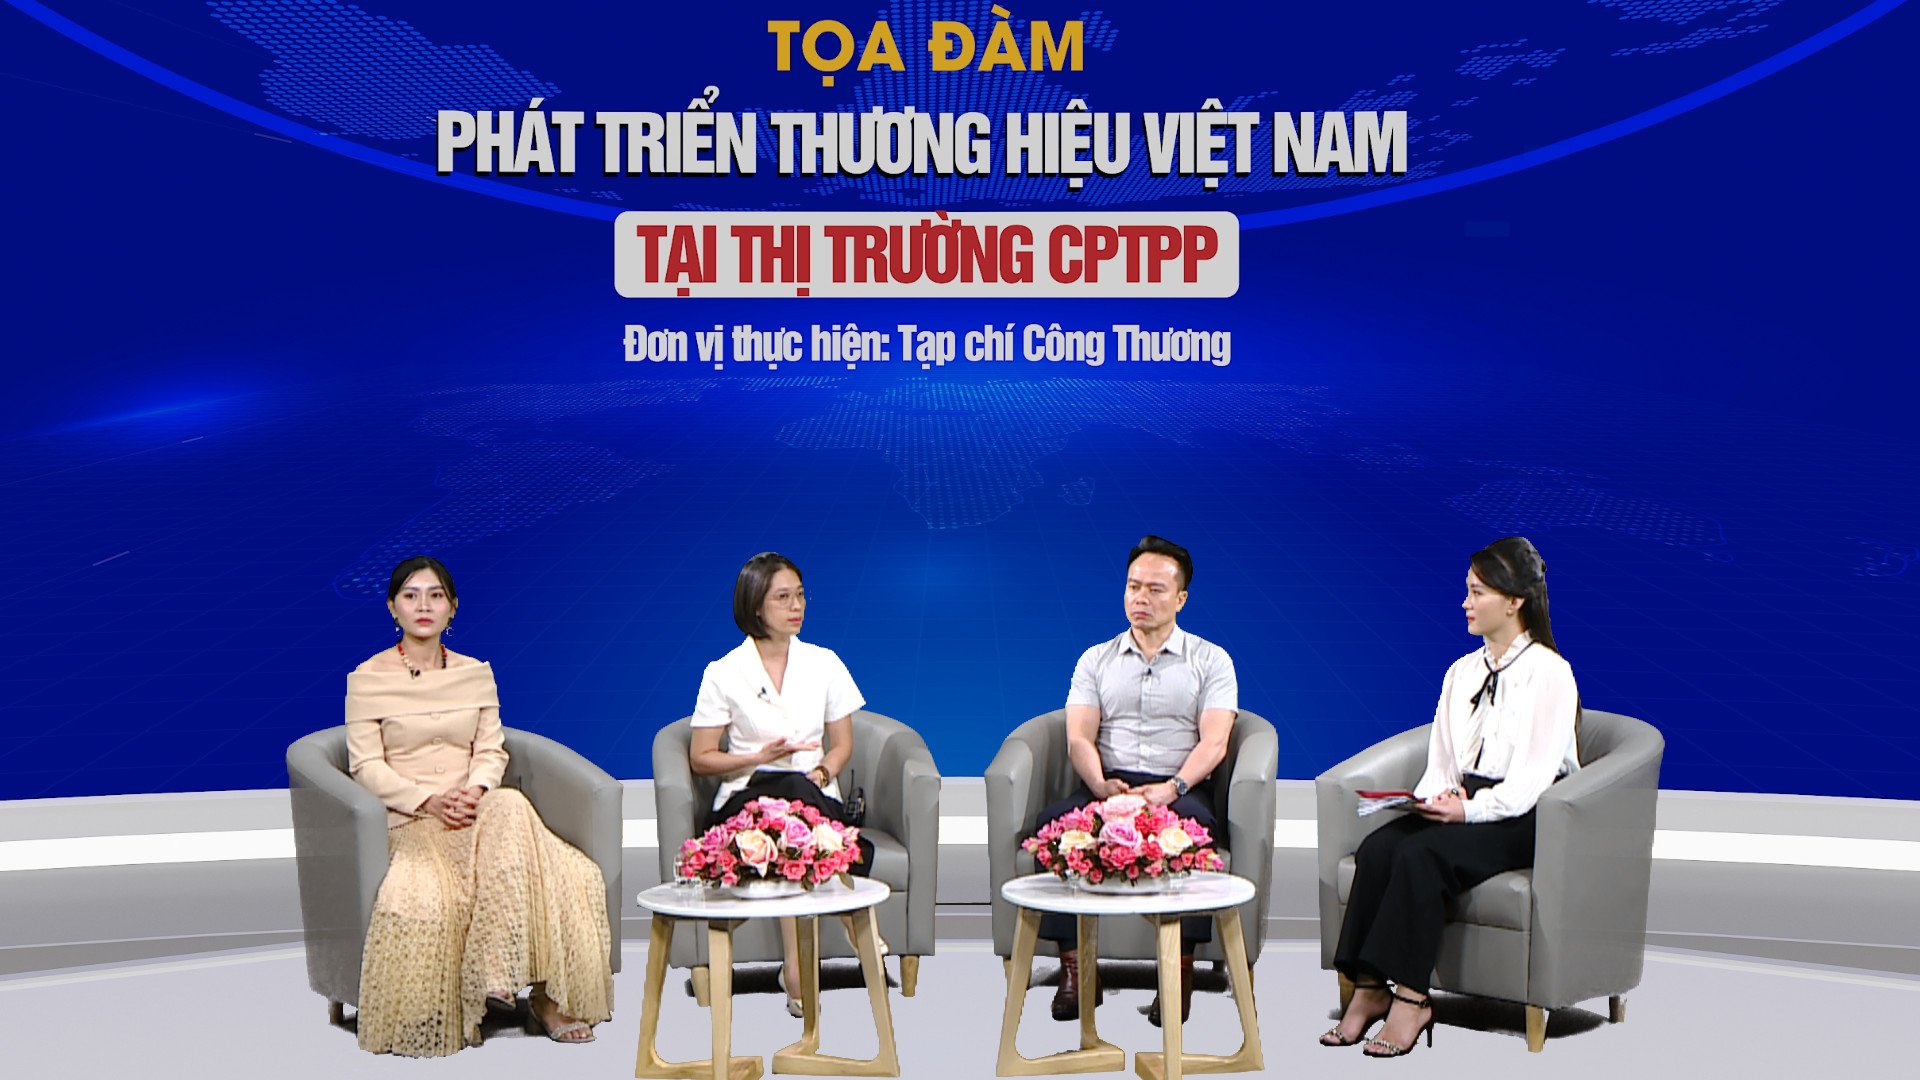 Các diễn giả tại Tọa đàm Phát triển thương hiệu Việt Nam tại thị trường CPTPP đều cho rằng dư địa cho sản phẩm Việt còn rất lớn.